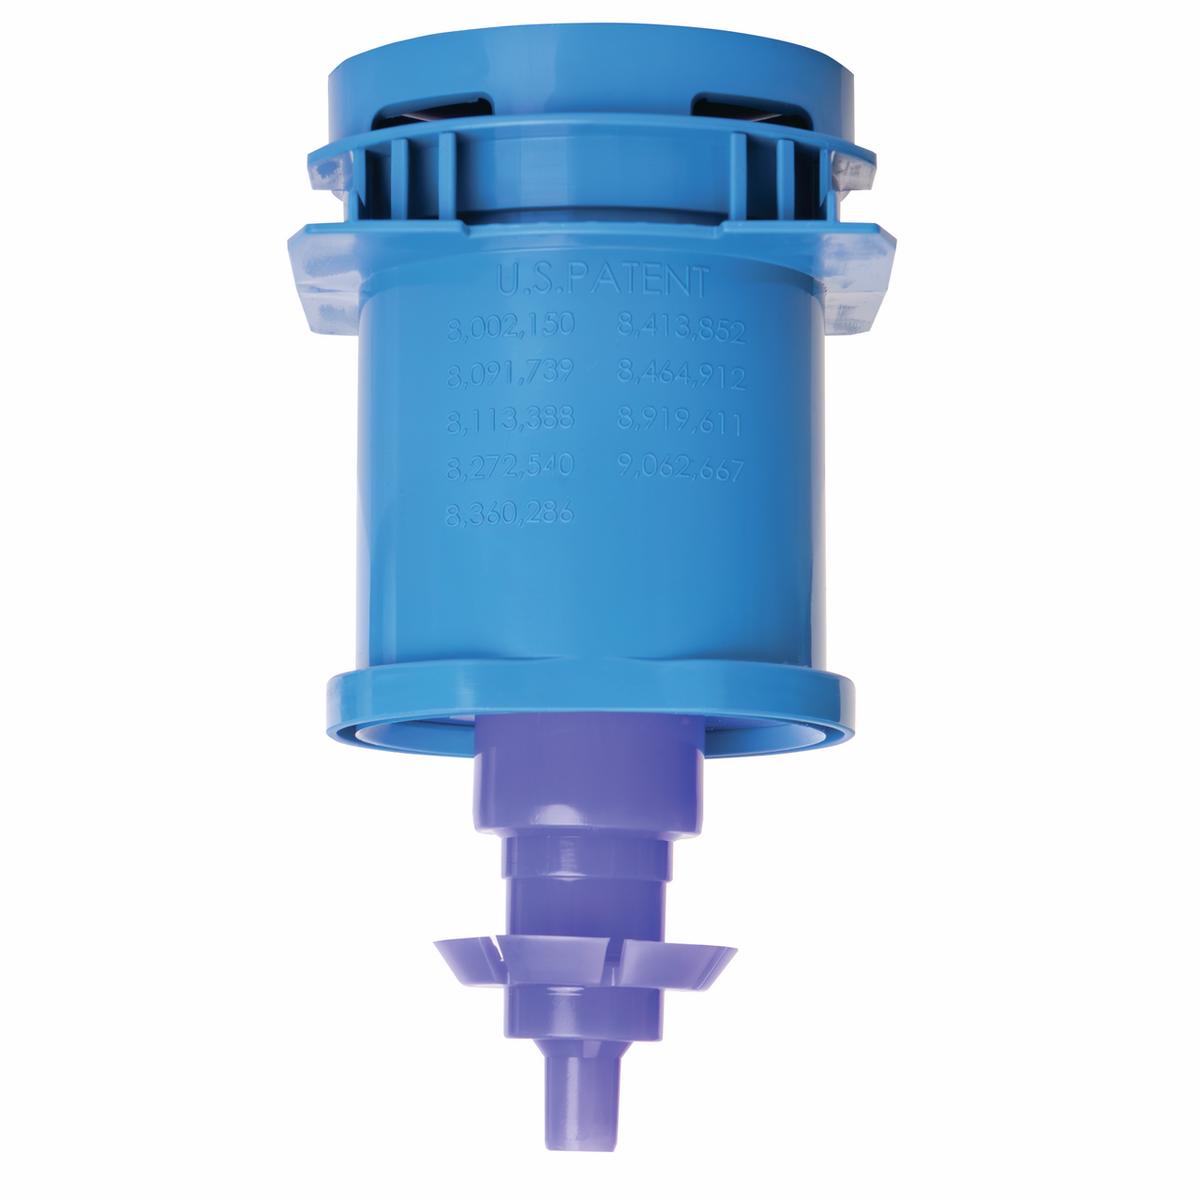 X10 Pumpe für Desinfektionsmittel, 1,0-3,0 ml, belüftet